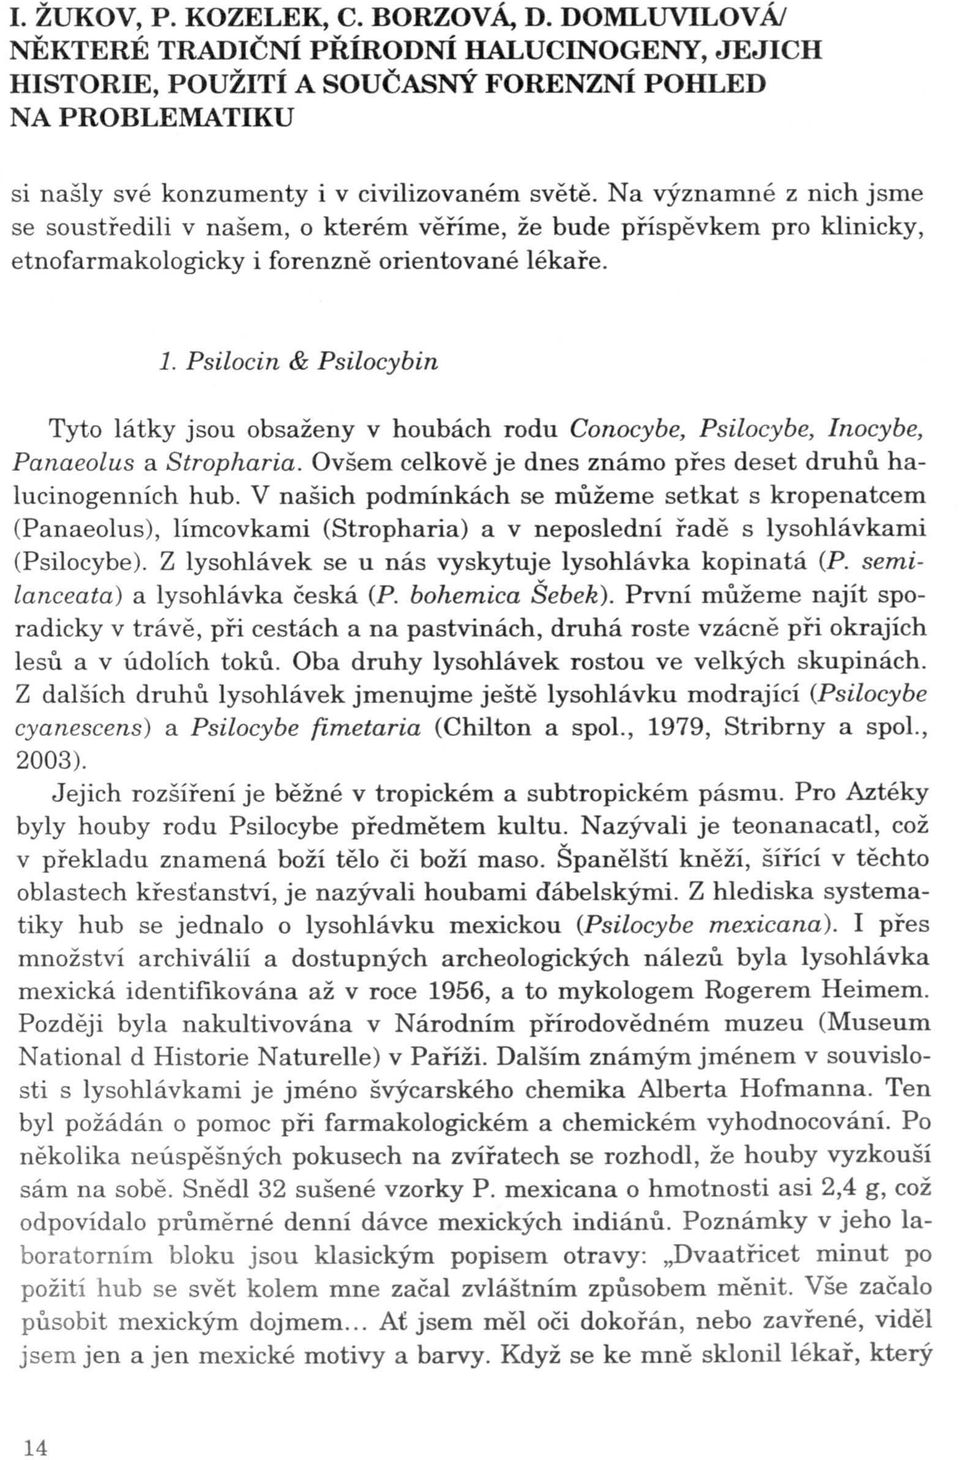 Psilocin & Psilocybin Tyto látky jsou obsaženy v houbách rodu Conocybe, Psilocybe, lnocybe, Panaeolus a Stropharia. Ovšem celkově je dnes známo přes deset druhů halucinogenních hub.